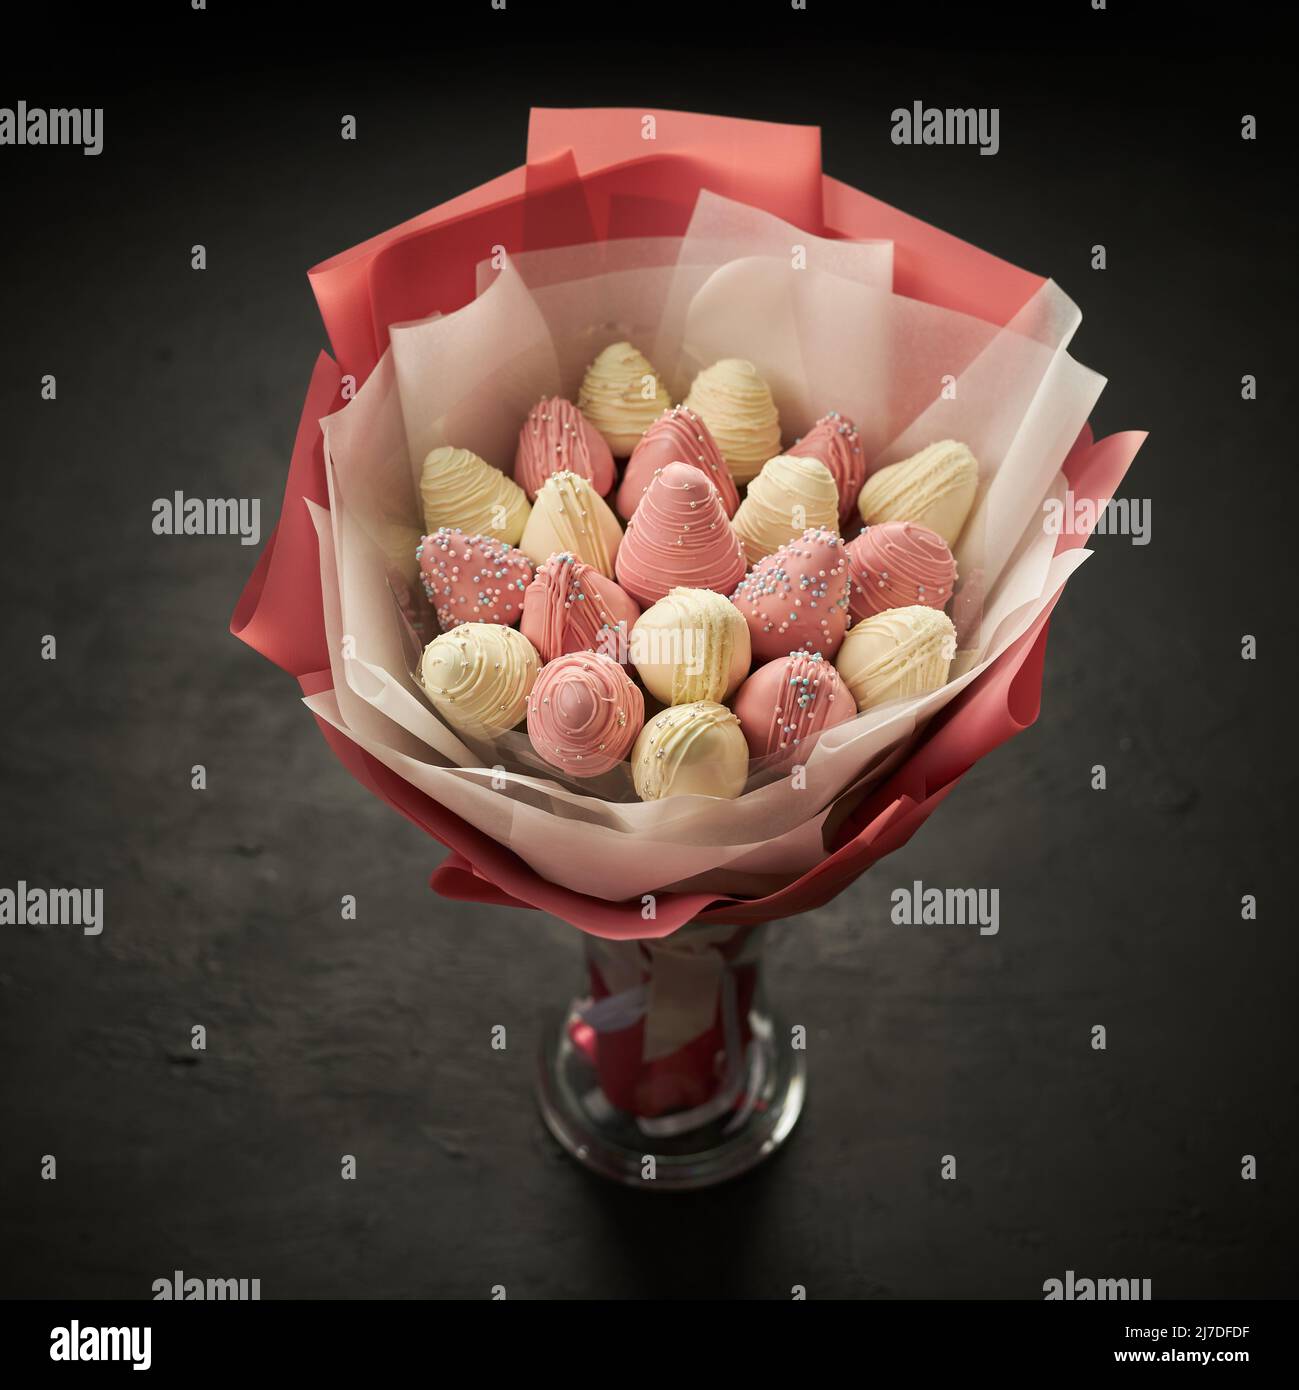 Un ramo de fresas maduras cubiertas de chocolate blanco y rosa se coloca en un jarrón sobre fondo negro Foto de stock